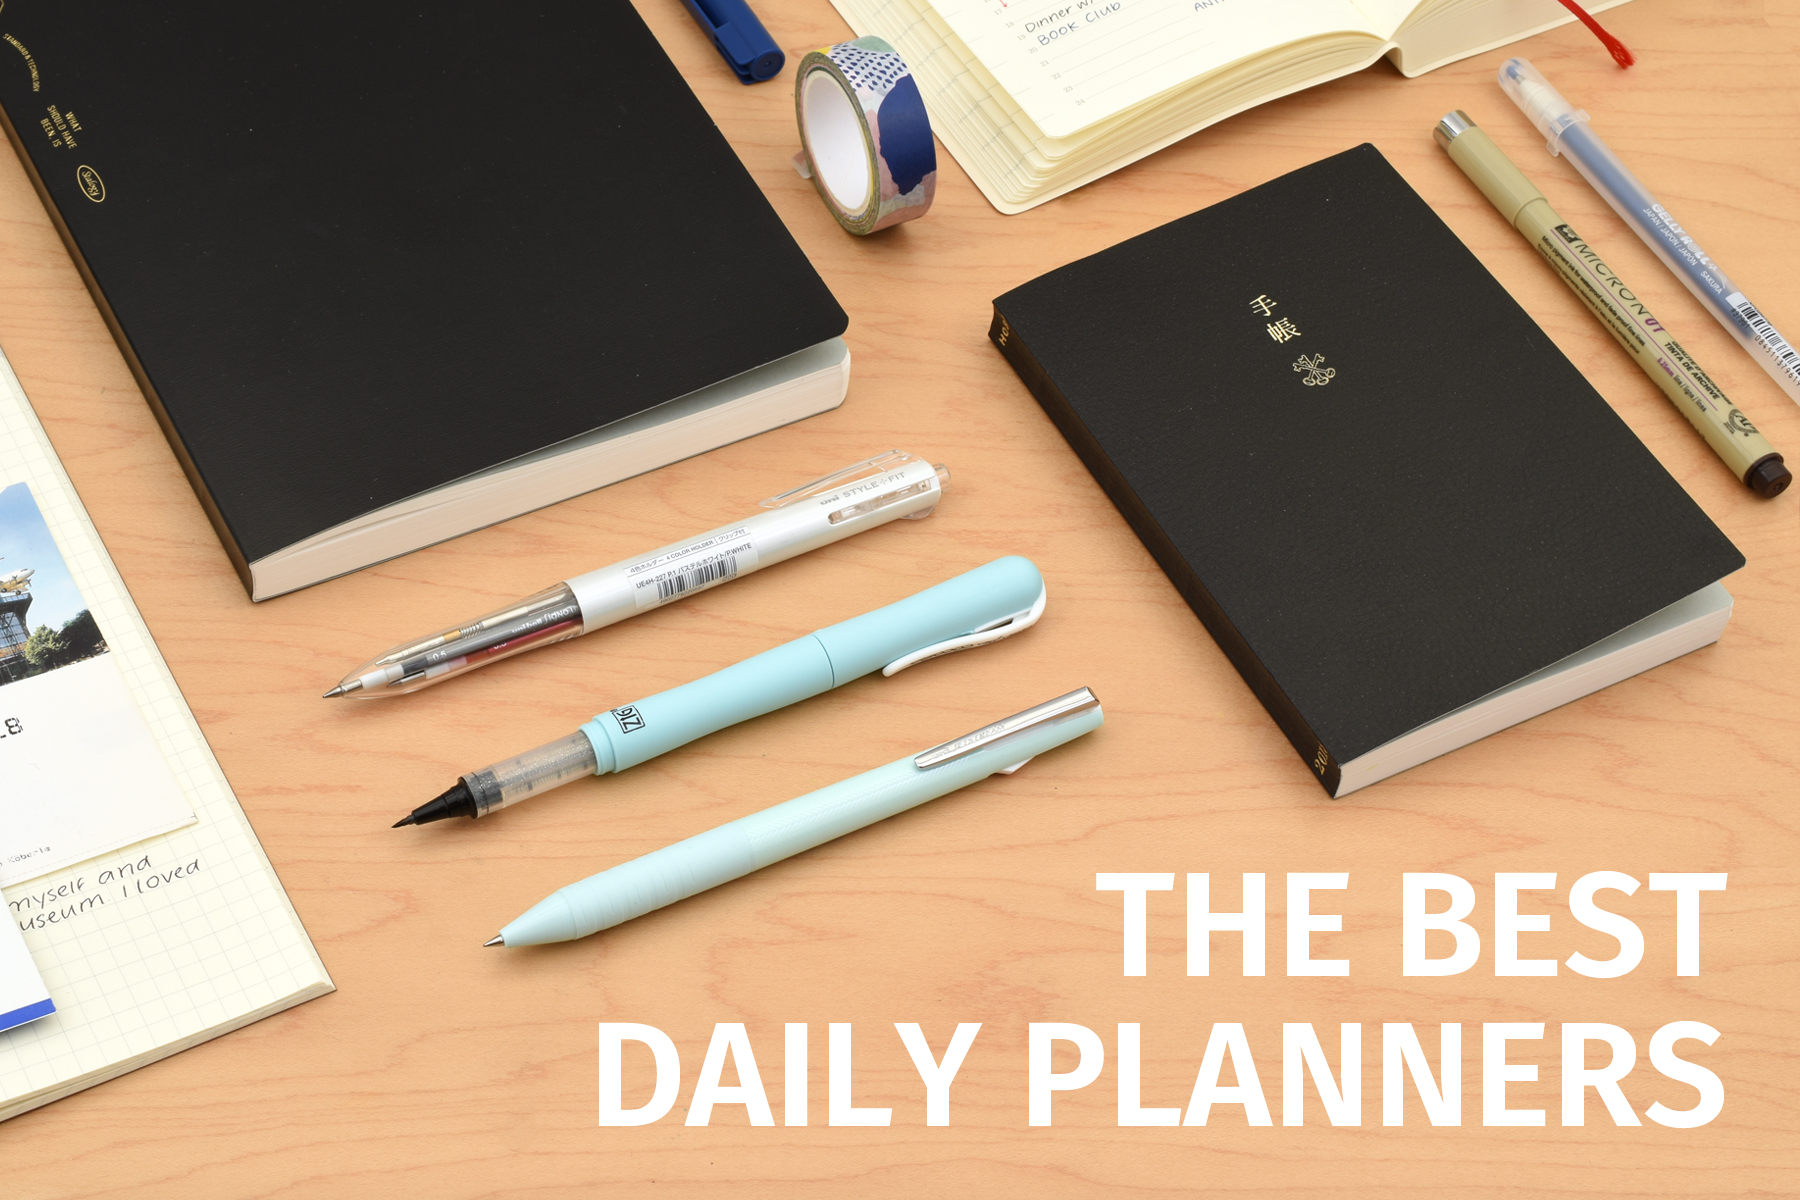 Best Planner Pens  Planner pens, Best planners, Planner supplies